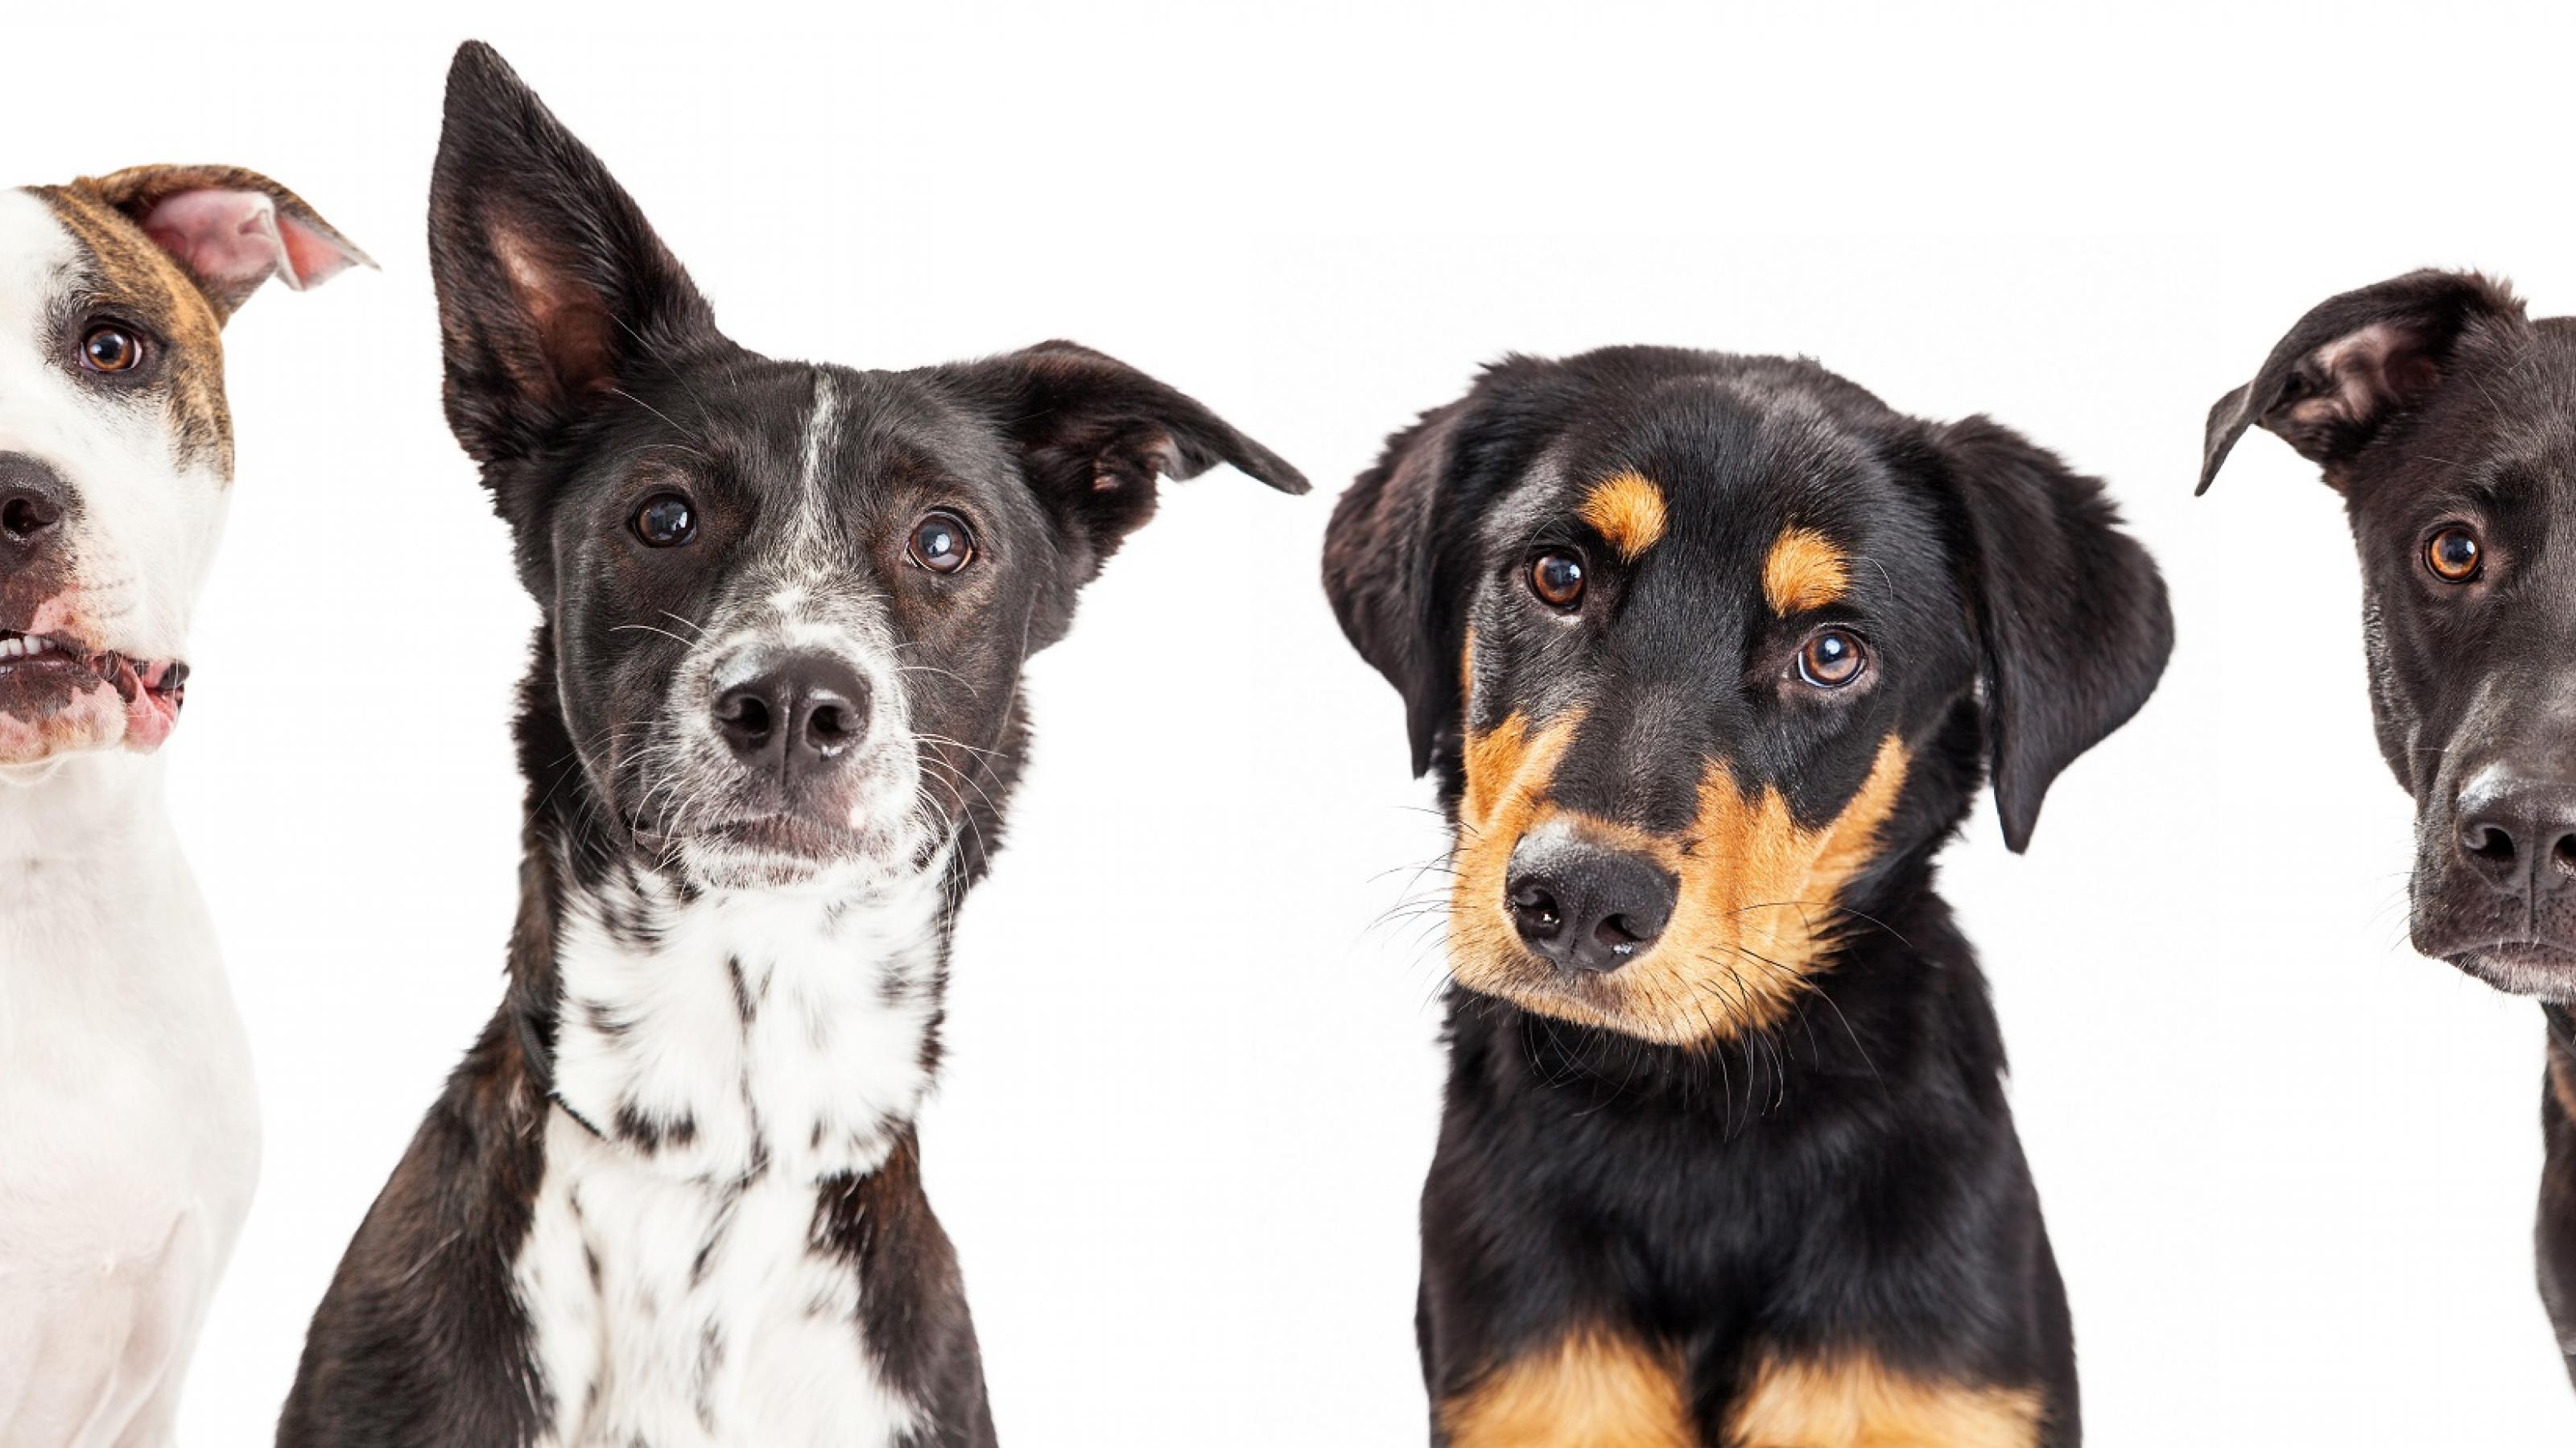 Vier Hunde verschiedener Rassen stehen nebeneinander und schauen den Betrachter mit großen, freundlichen Hundeaugen an. Man möchte sie unbedingt streicheln.